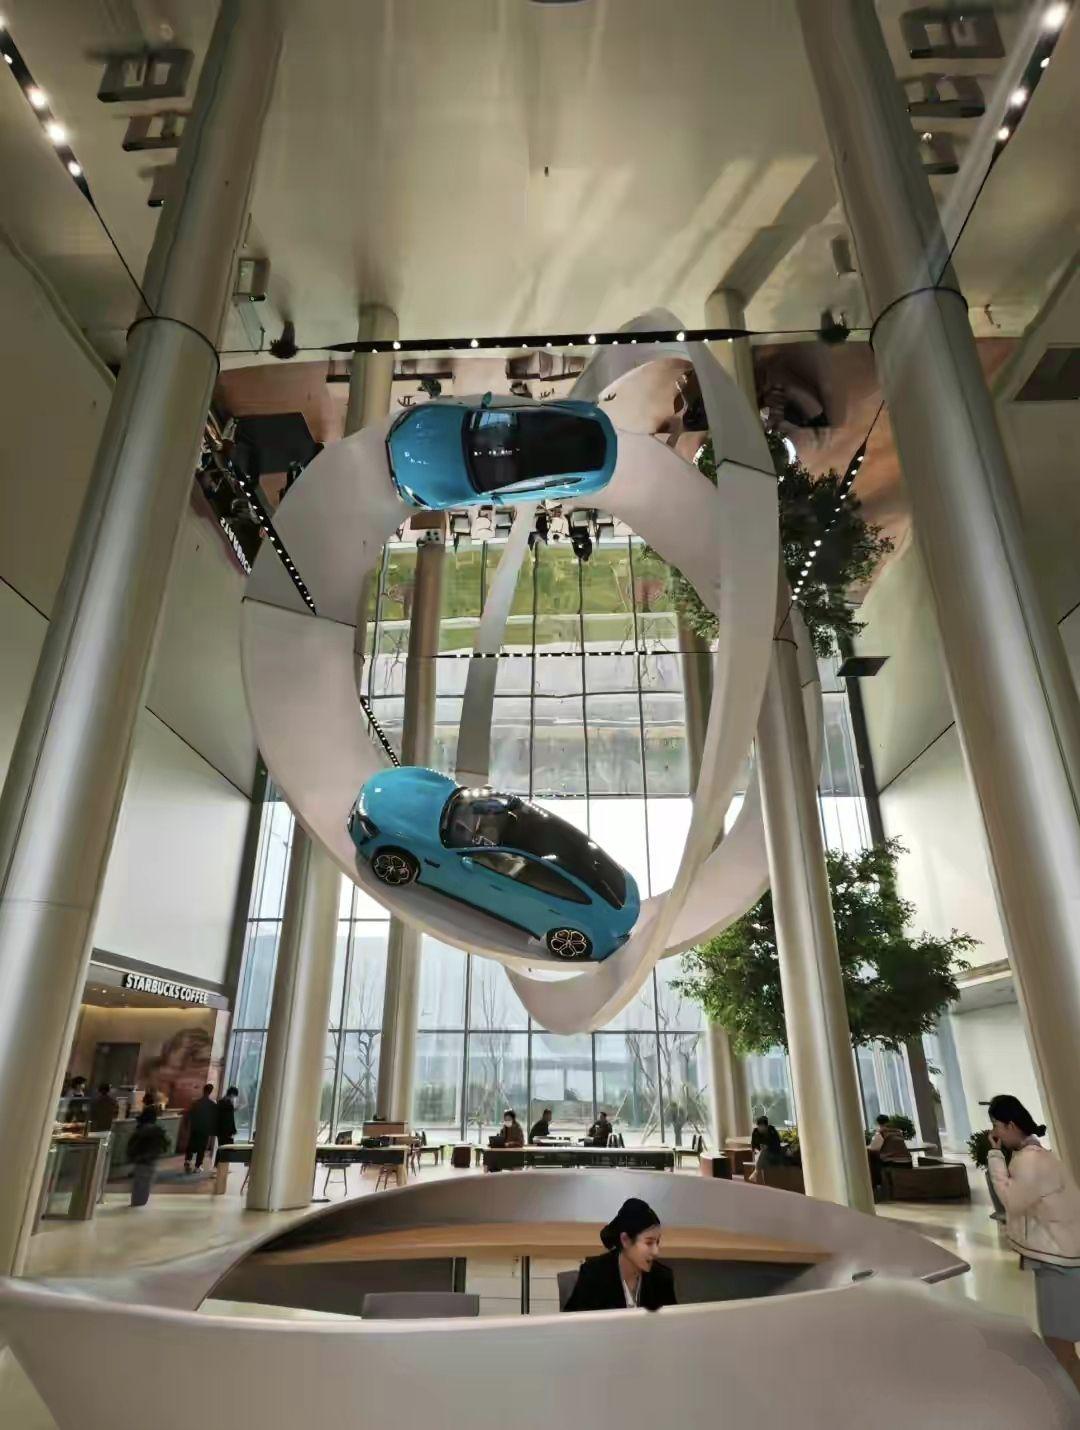 小米的汽车总部设计都是超级fashion的,两台跑车挂在空中跑道上,这